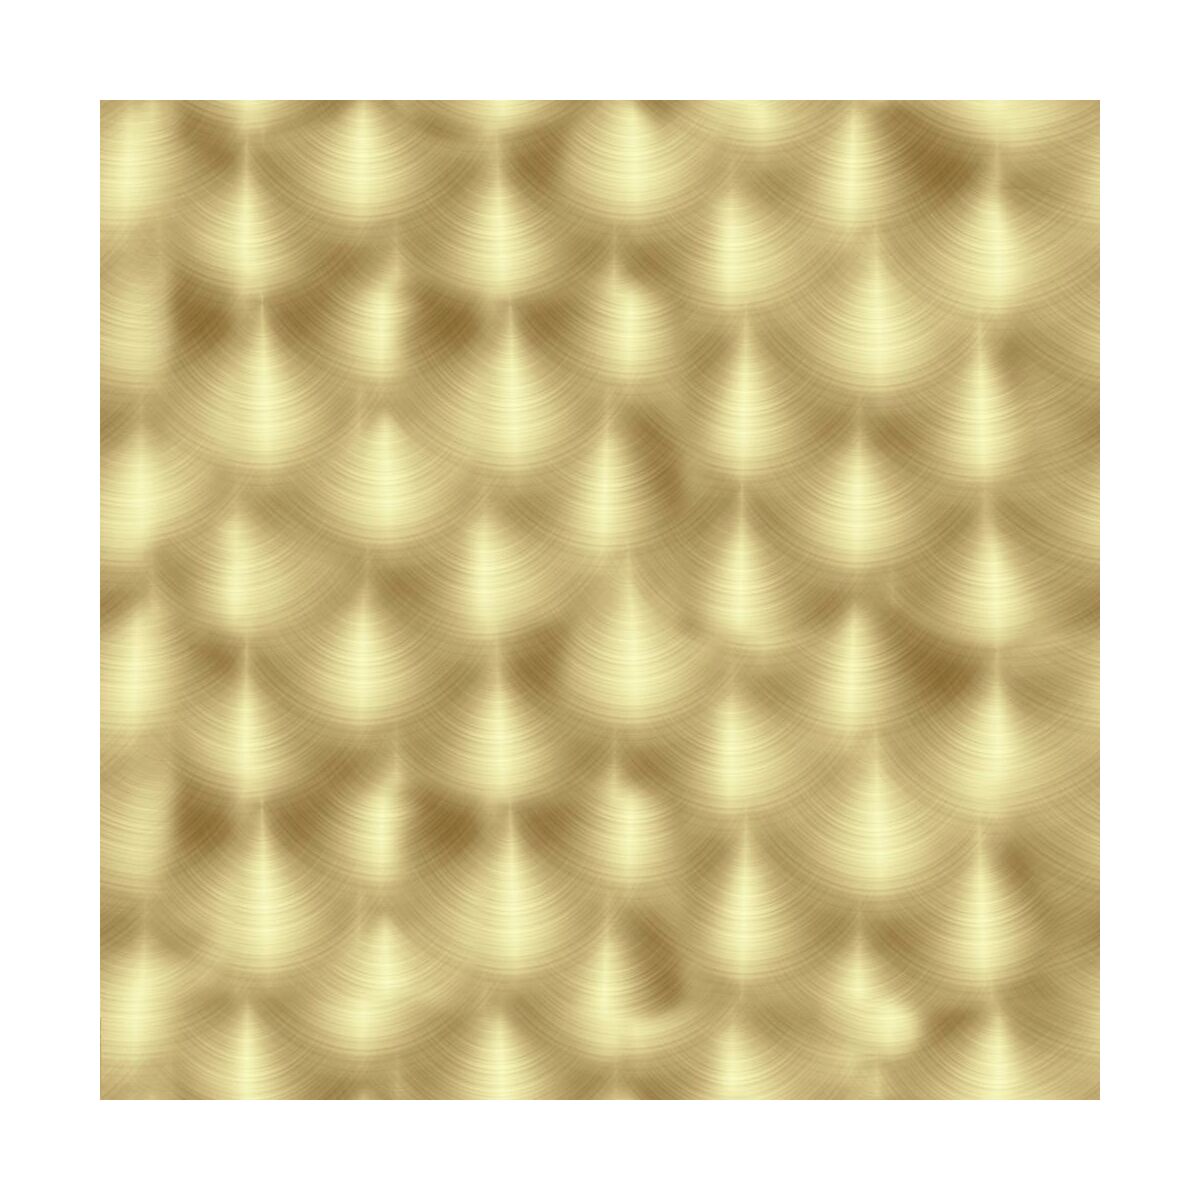 Panel kuchenny szklany Gold brush 60 x 60 cm Alfa-Cer